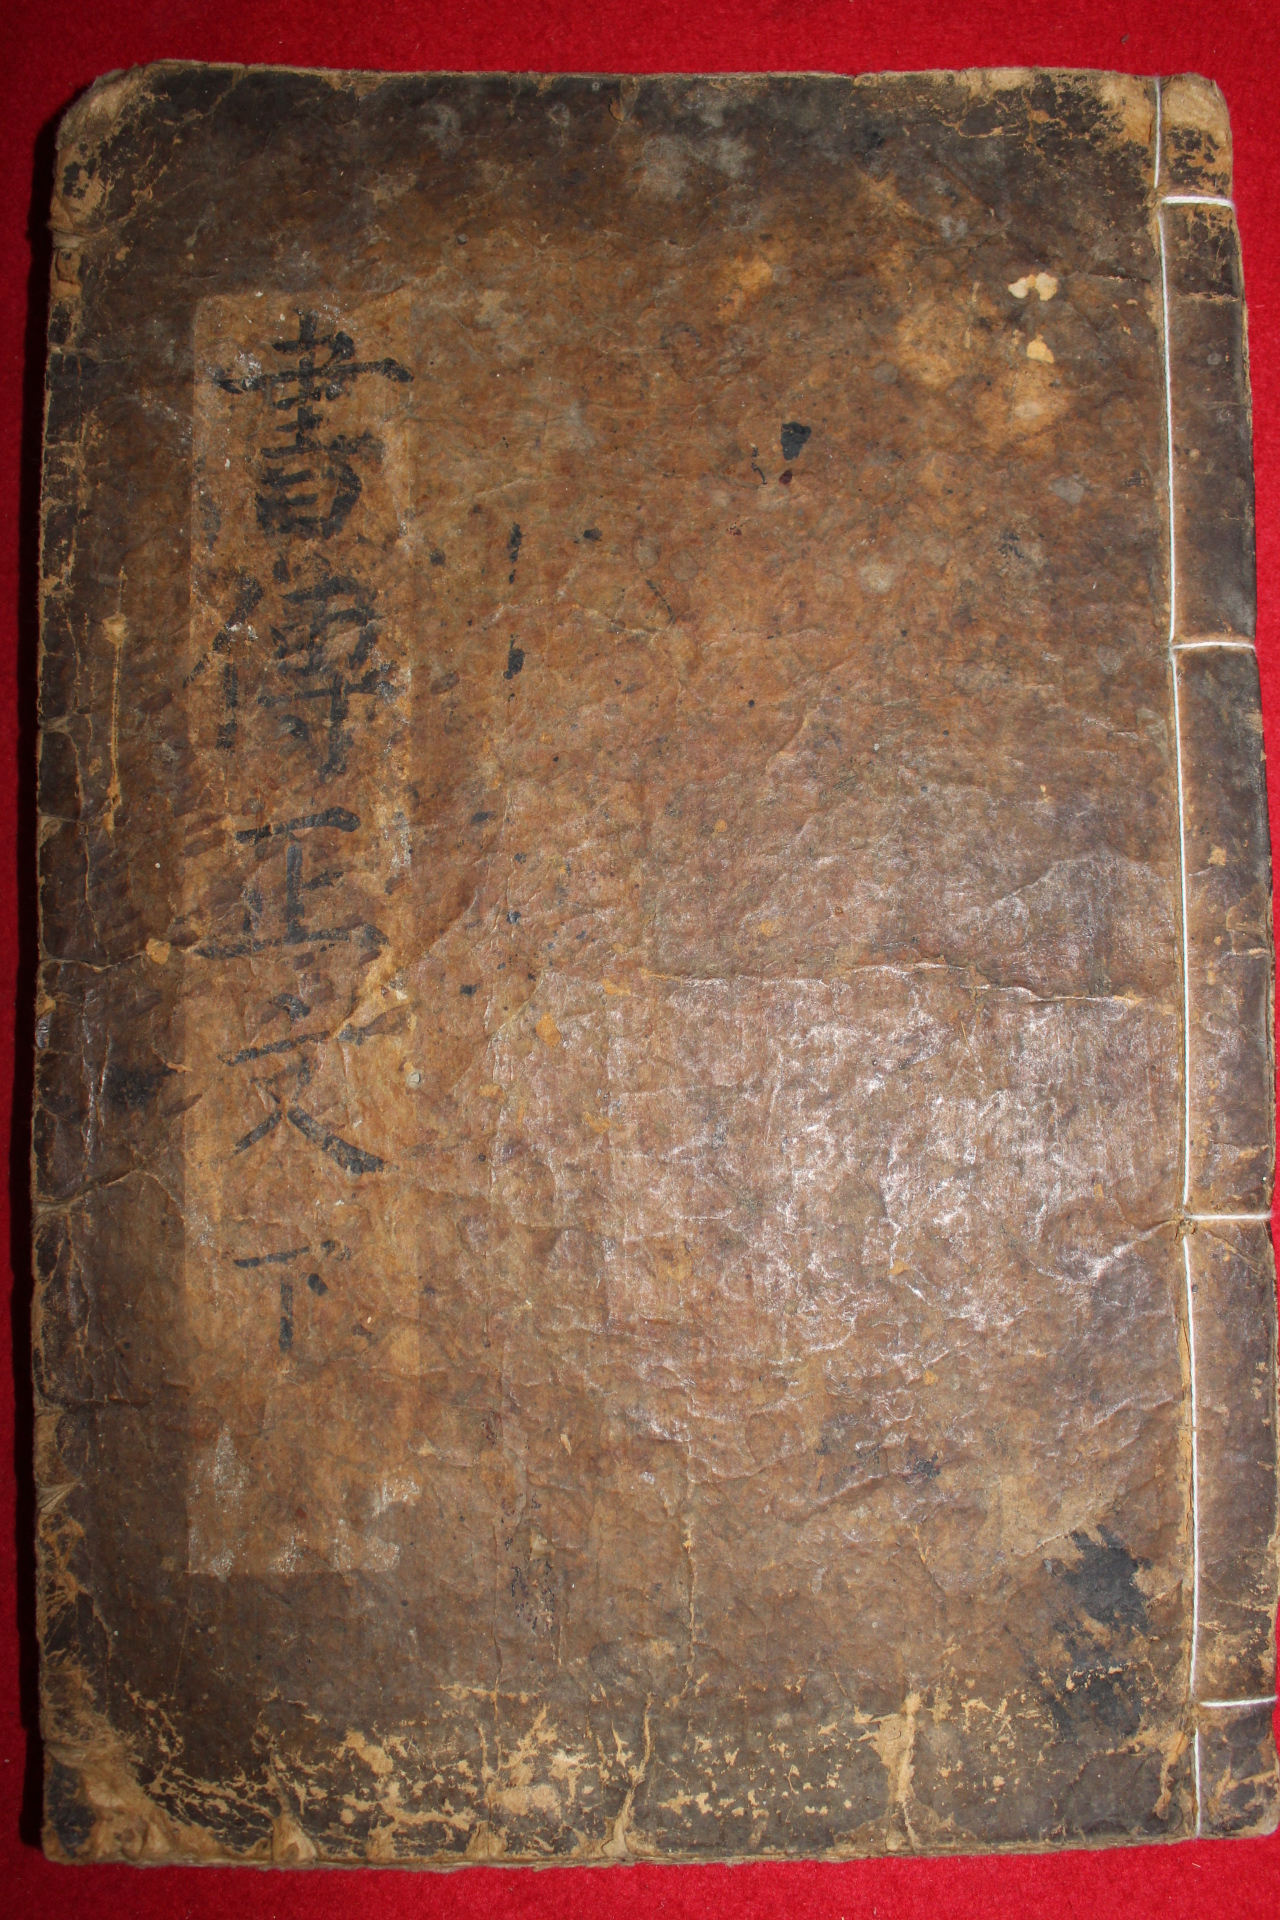 1600년대 금속활자본 서전정문(書傳正文)하권 1책